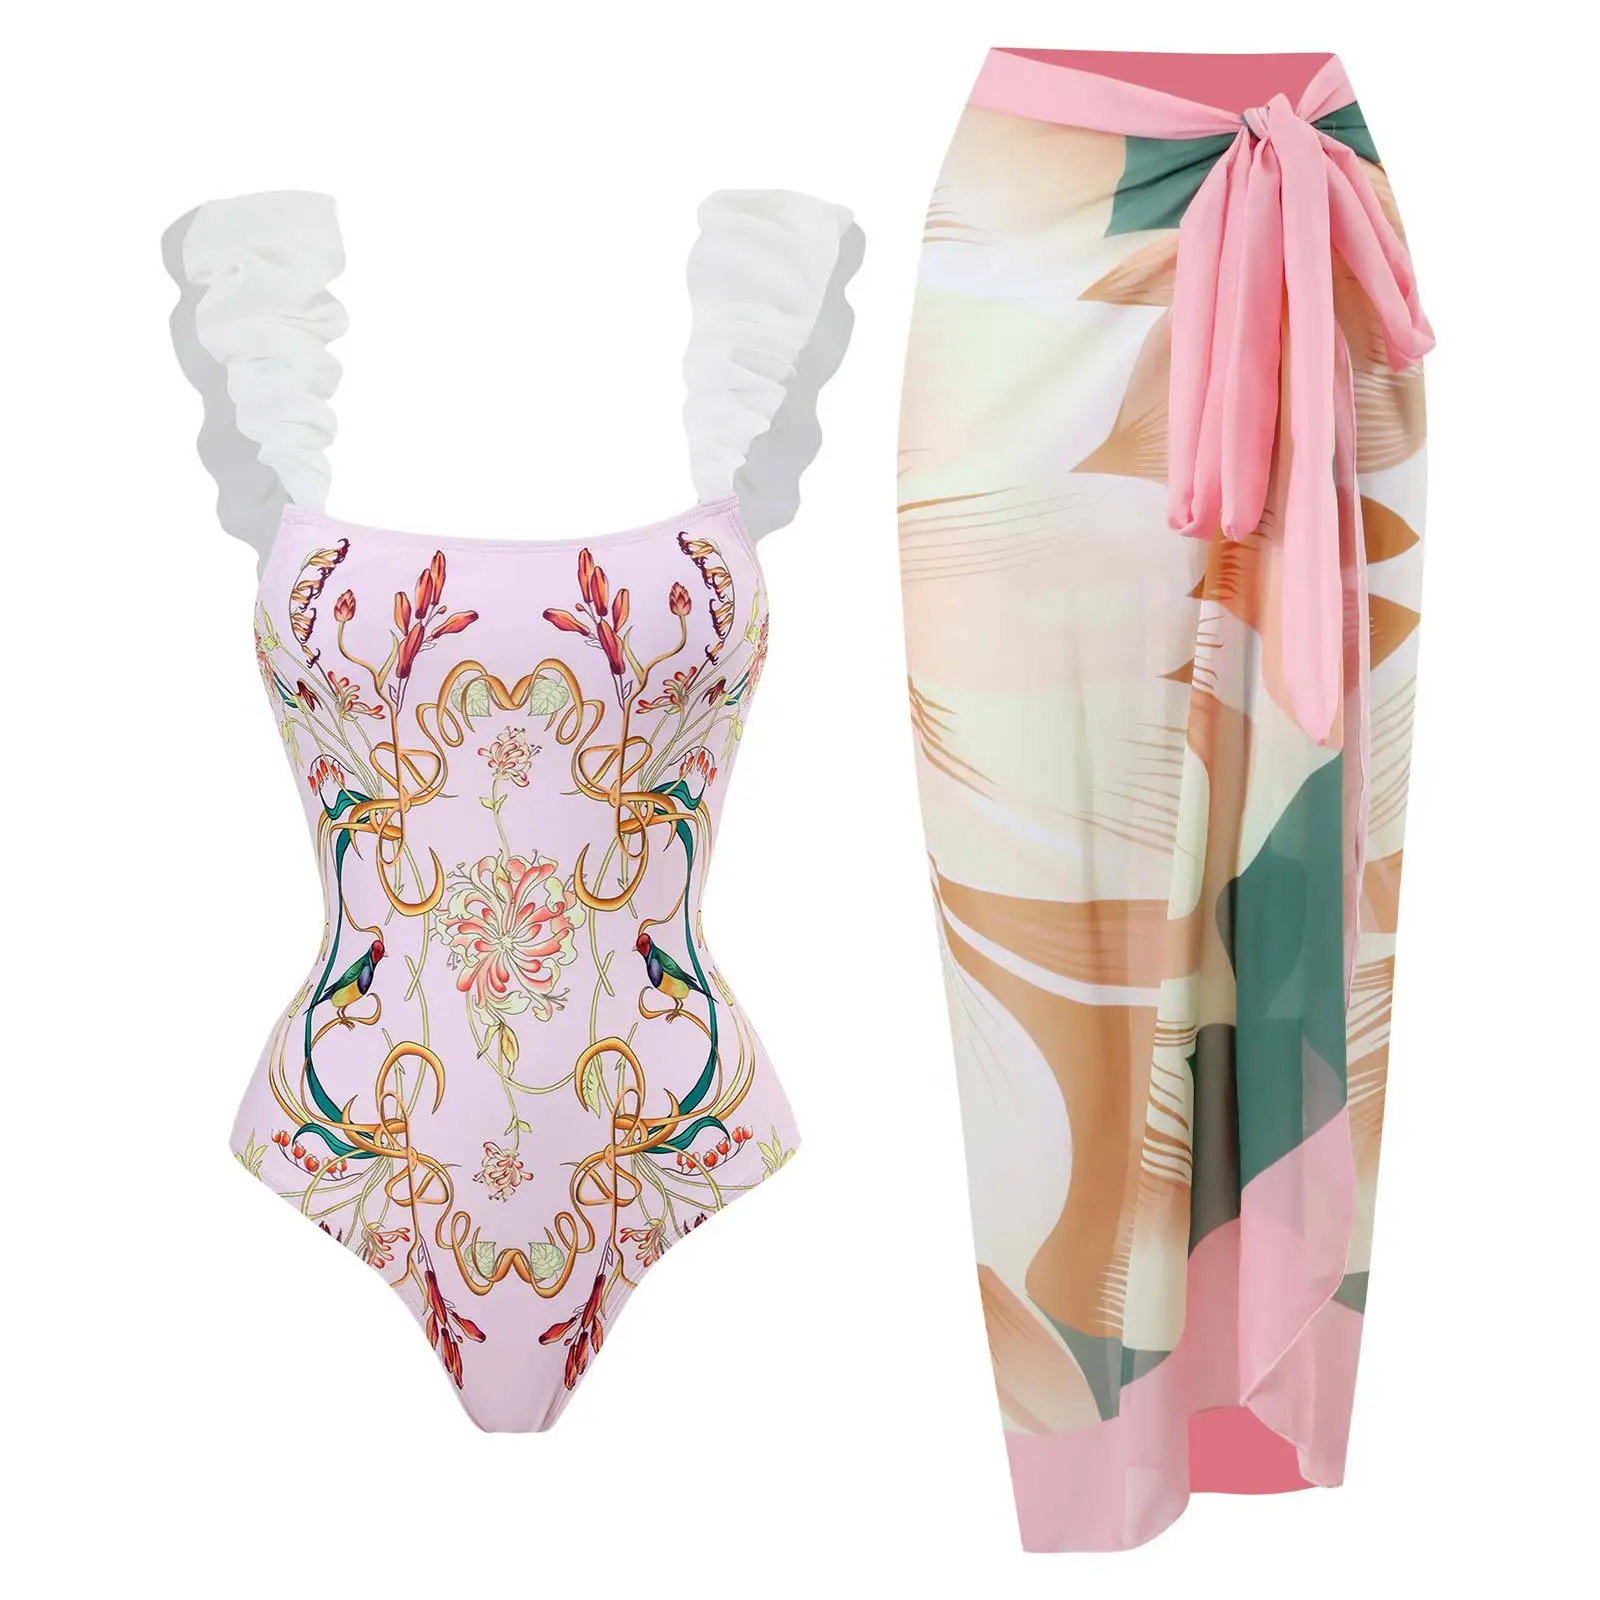 

Винтажный слитный купальник с цветочным принтом и цветными блоками, праздничное пляжное платье, дизайнерский купальный костюм, летняя одежда для серфинга